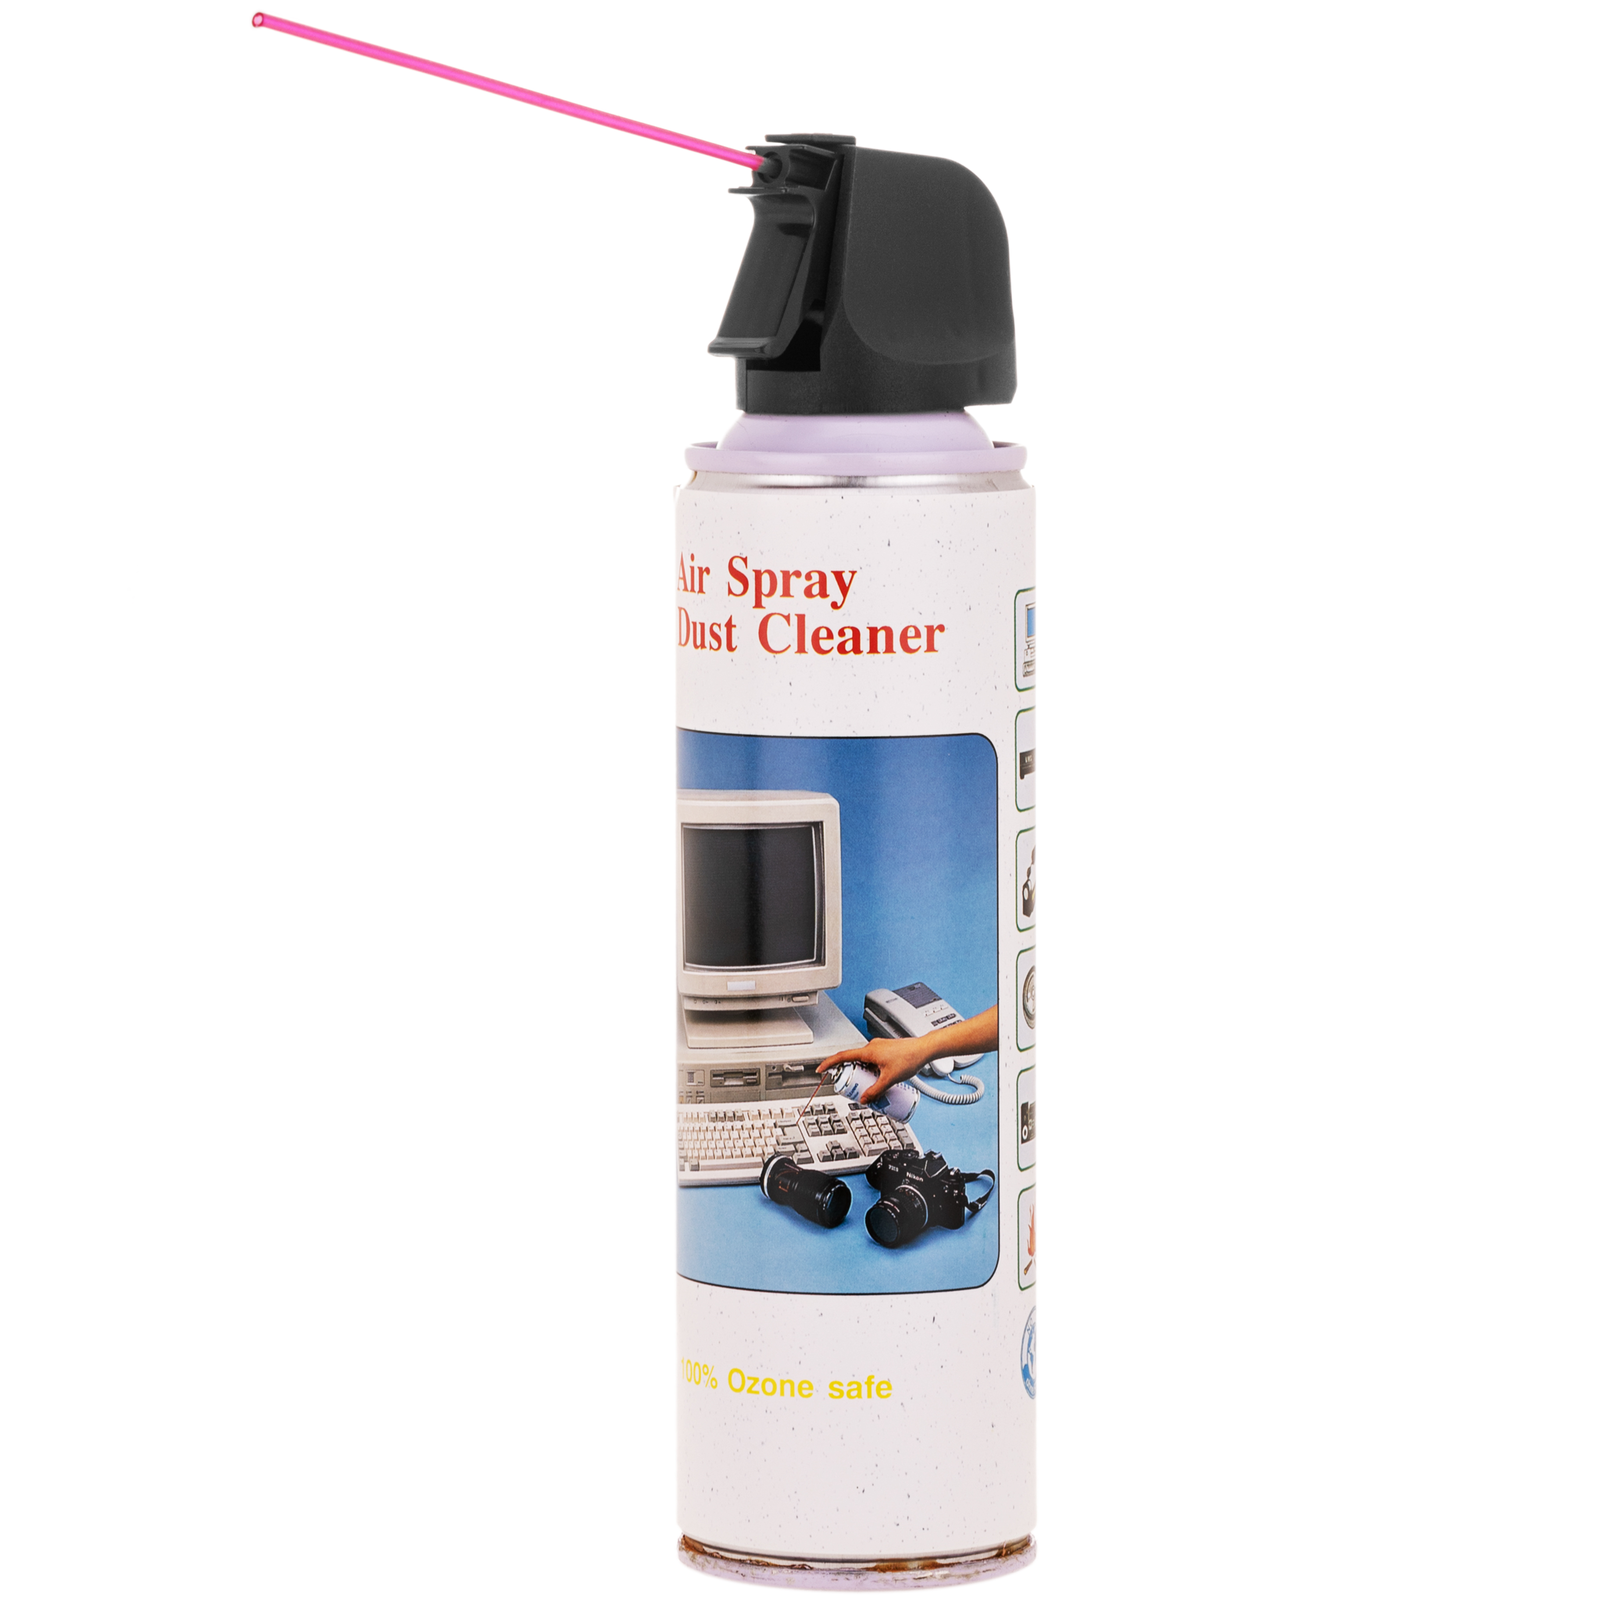 Spray limpiador de aire comprimido de 450ml